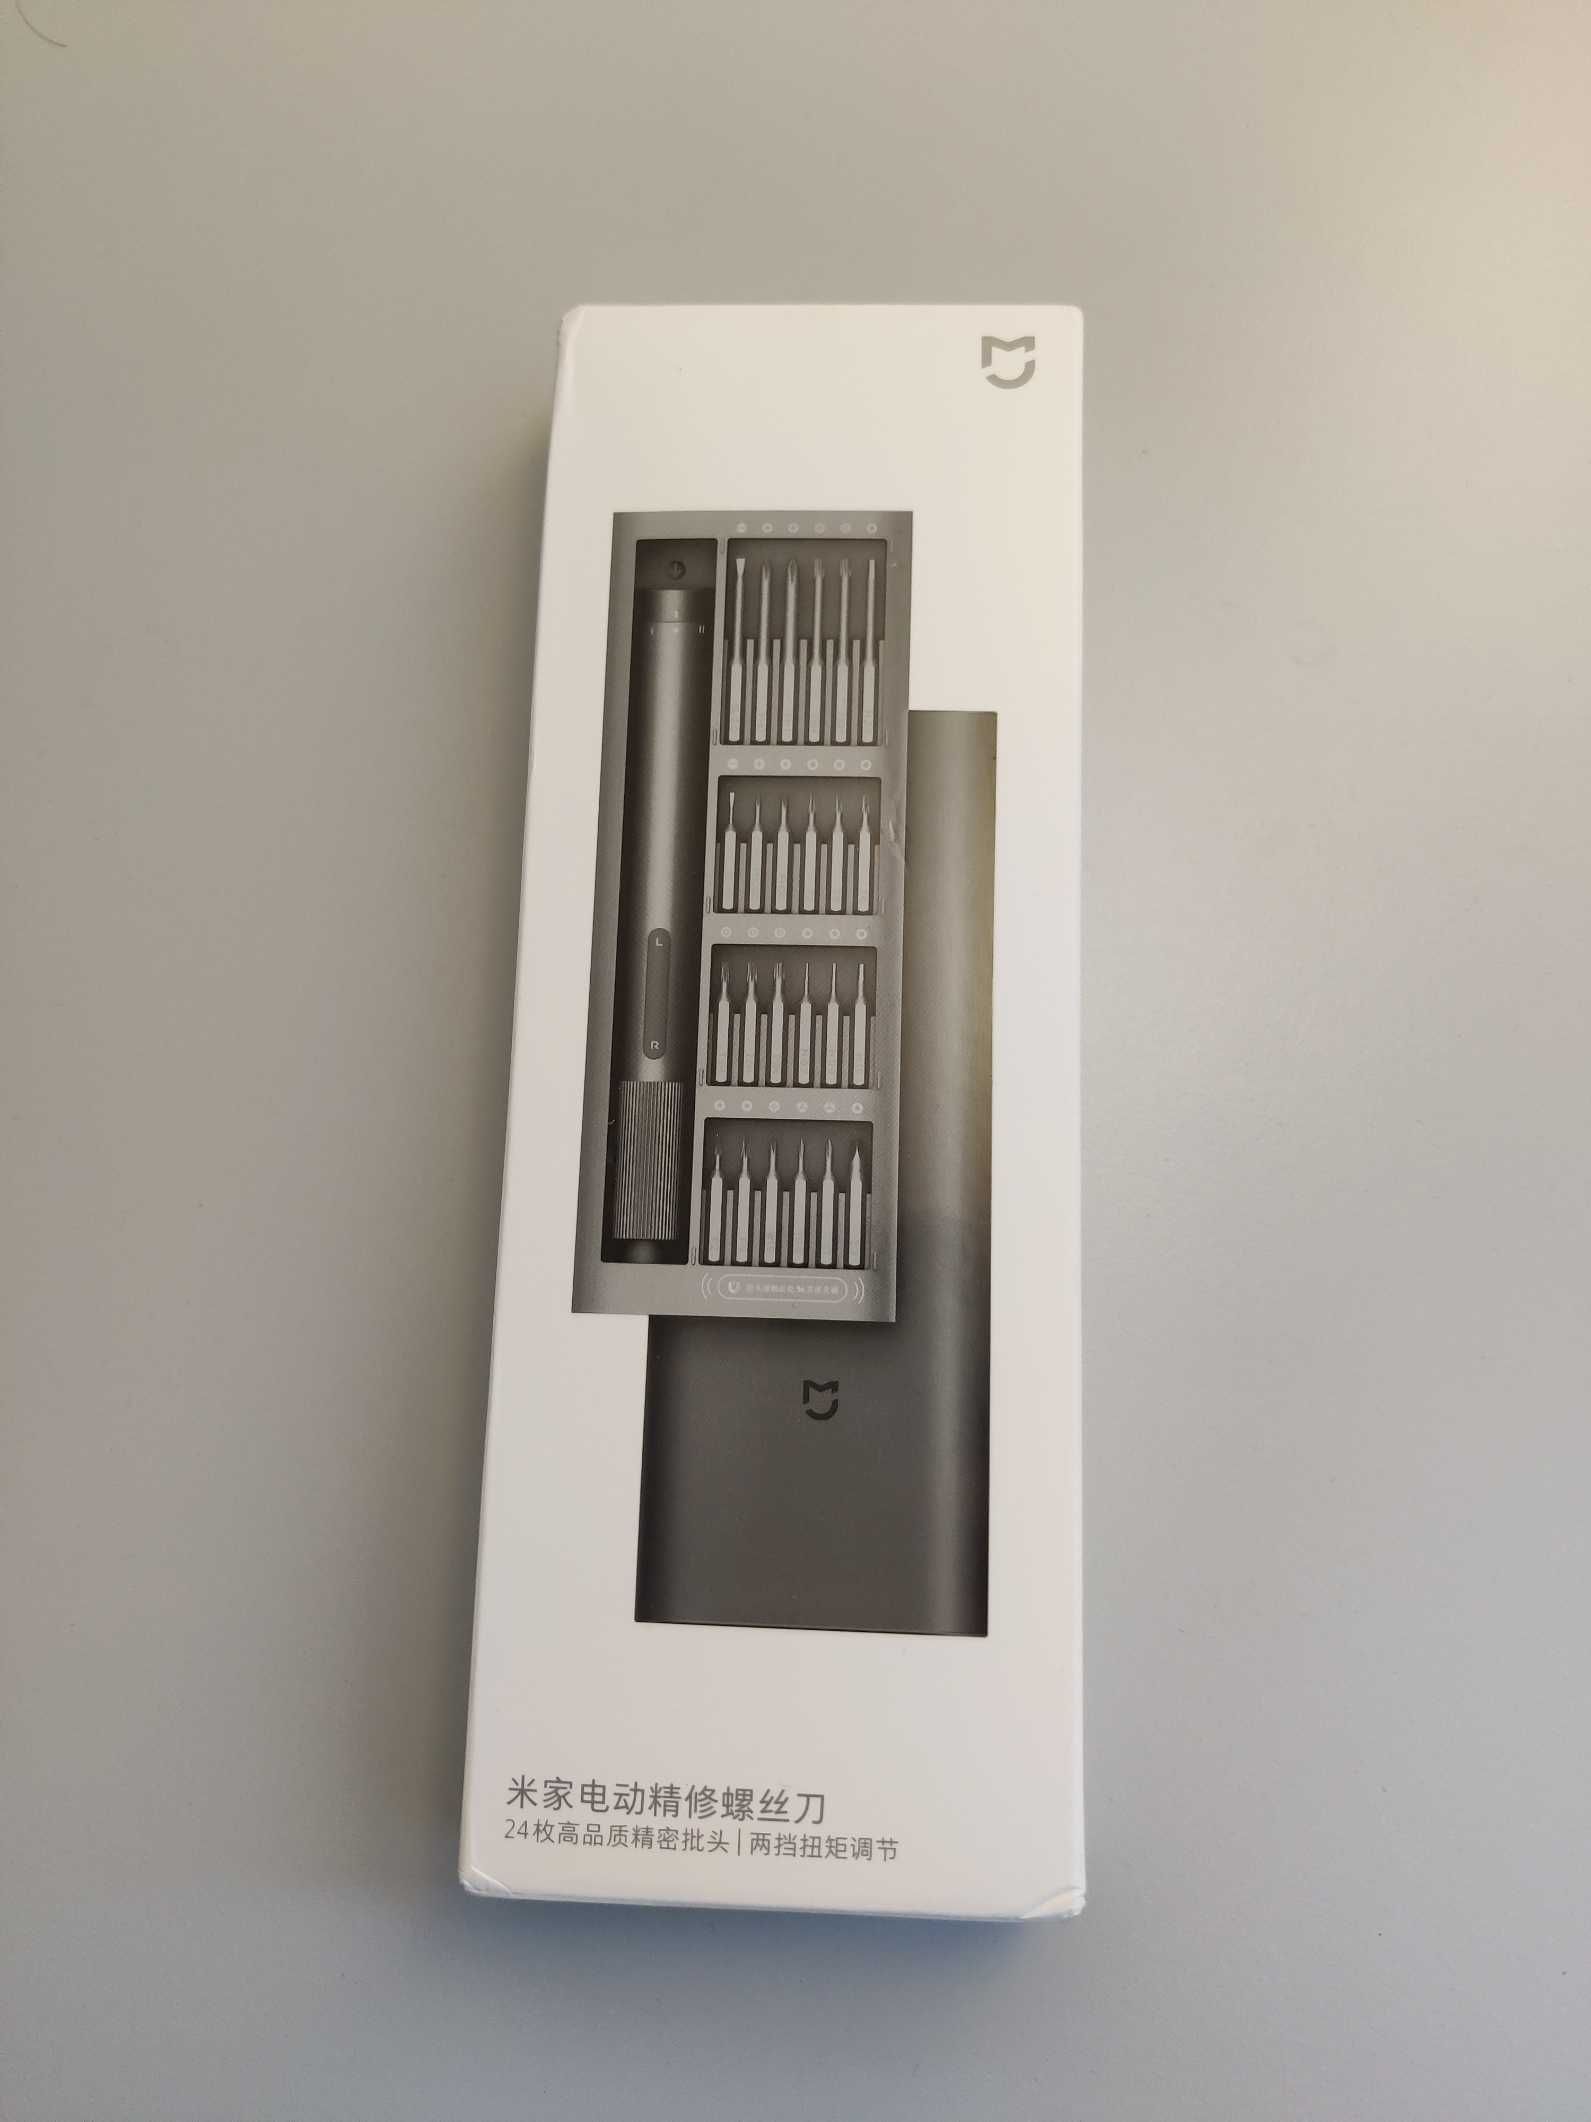 Wkrętak elektryczny Xiaomi Electric Precision Screwdriver NOWY